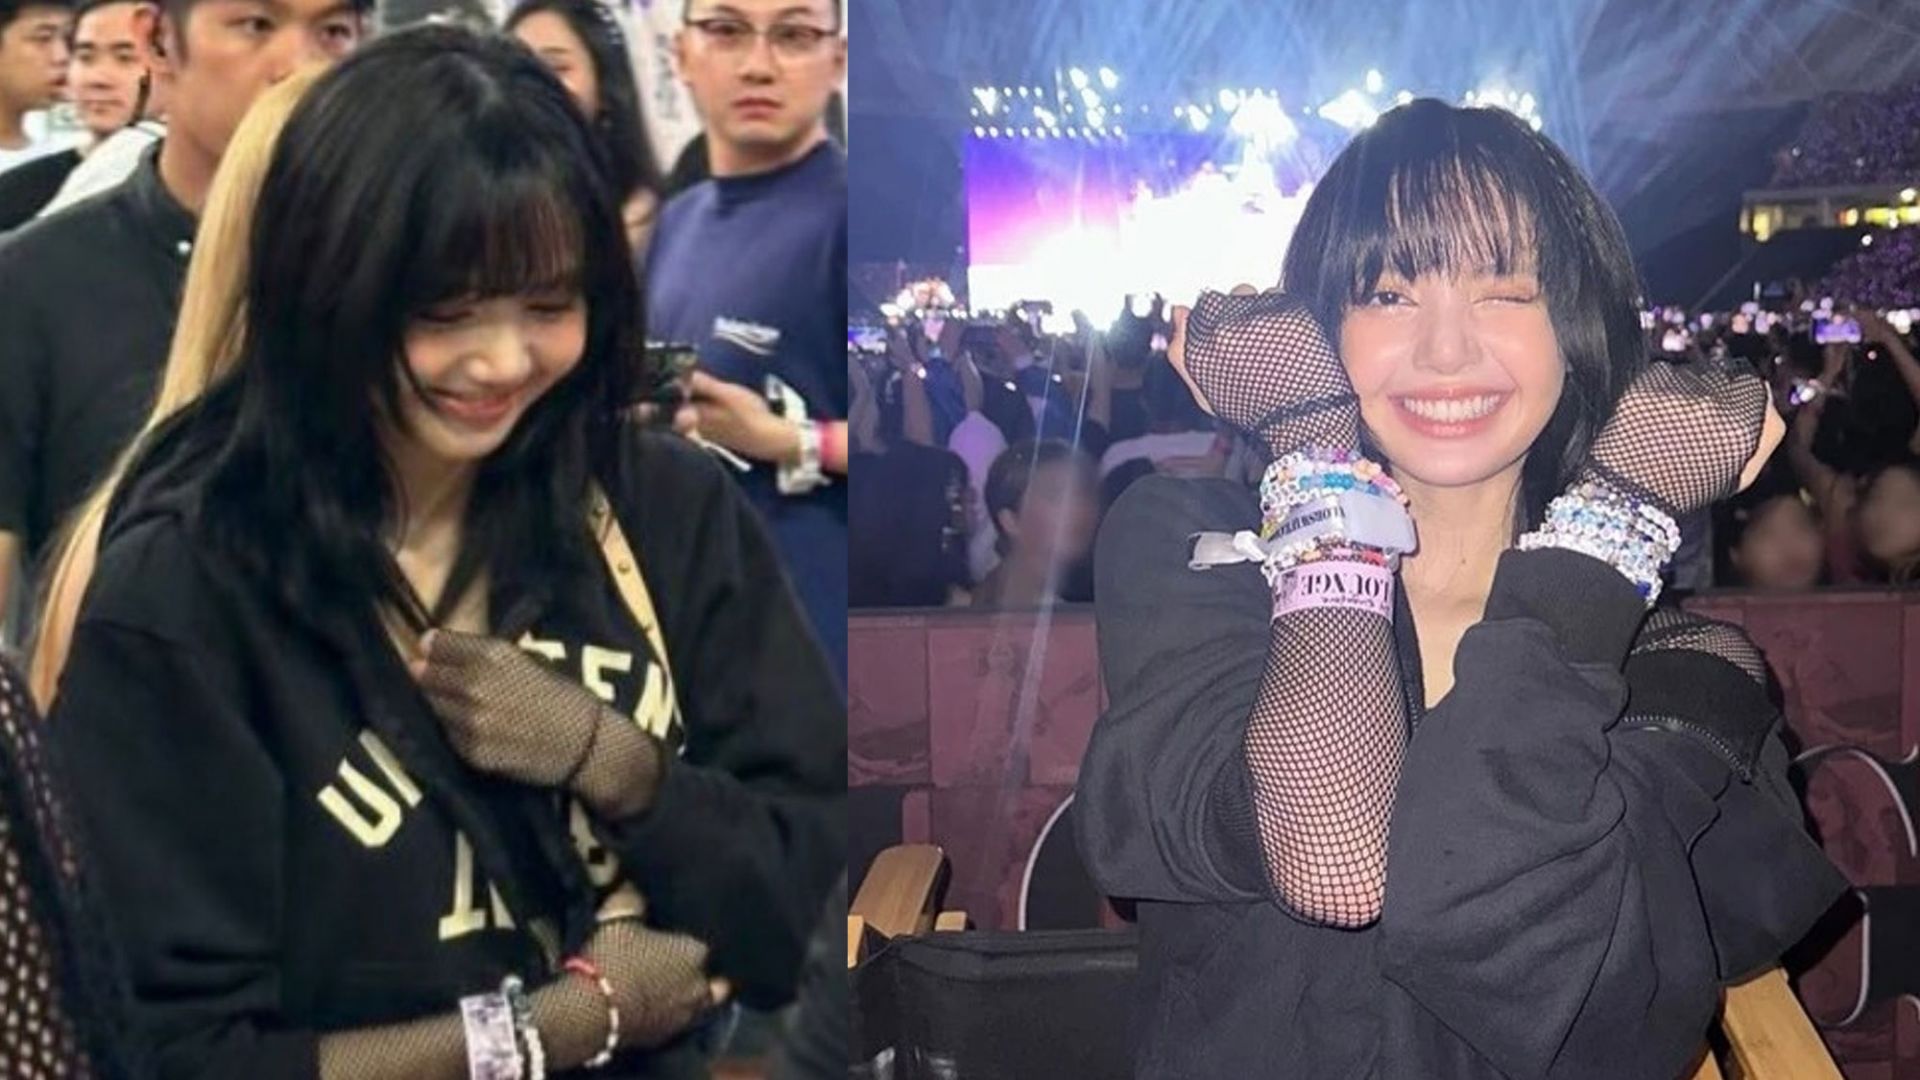 Lisa diện áo thương hiệu Việt đi xem Taylor Swift biểu diễn